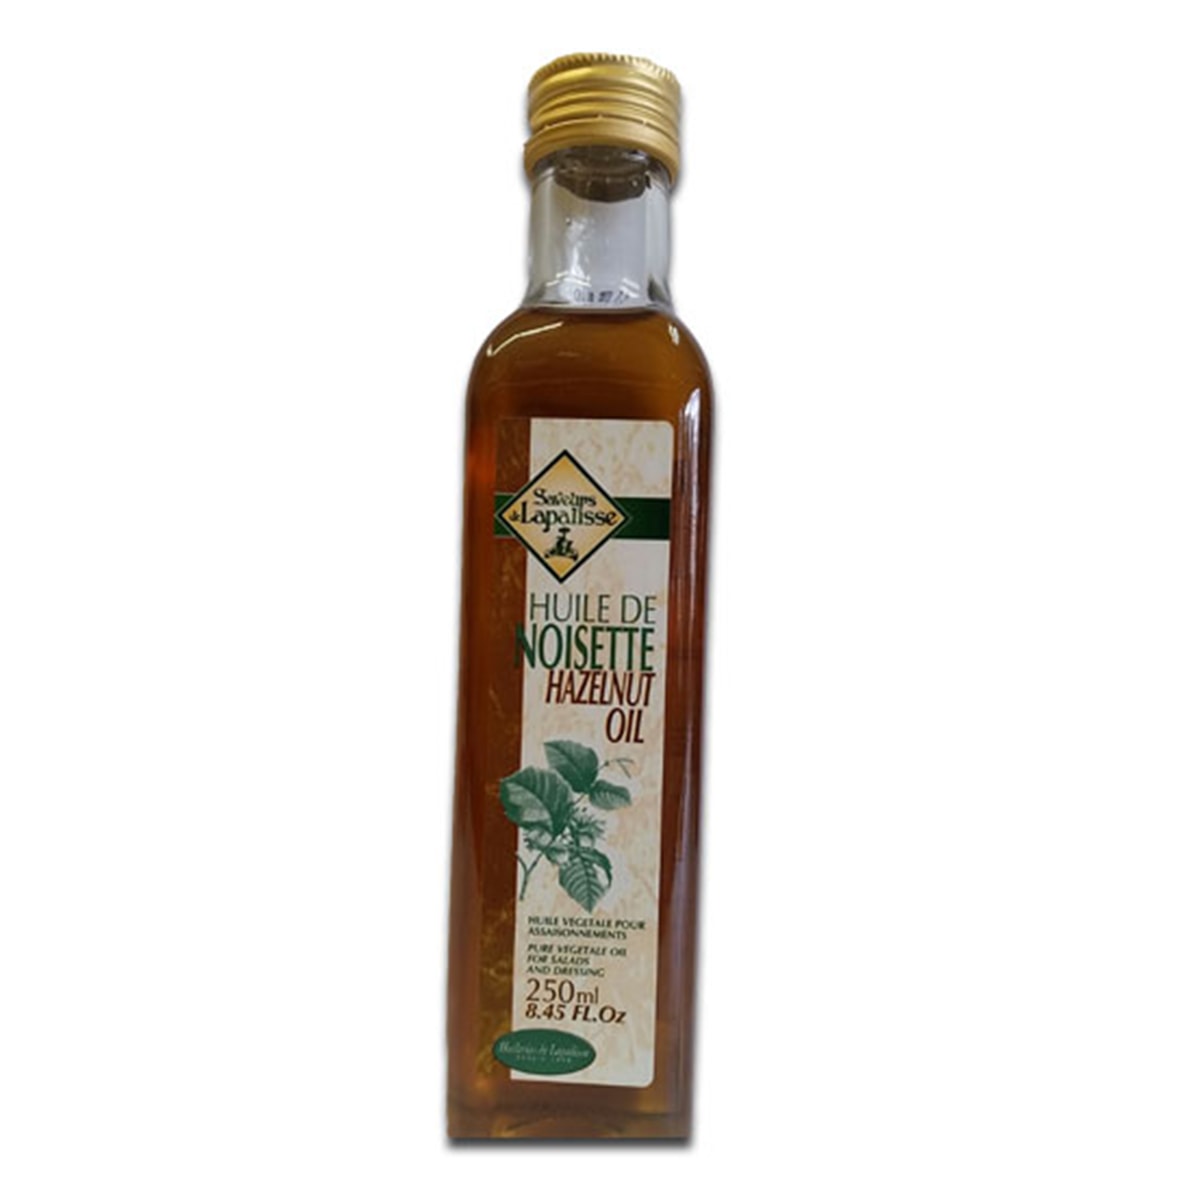 Buy Saveurs De Lapalisse Huile De Noisette (100% Pure Hazelnut Oil) - 250 ml